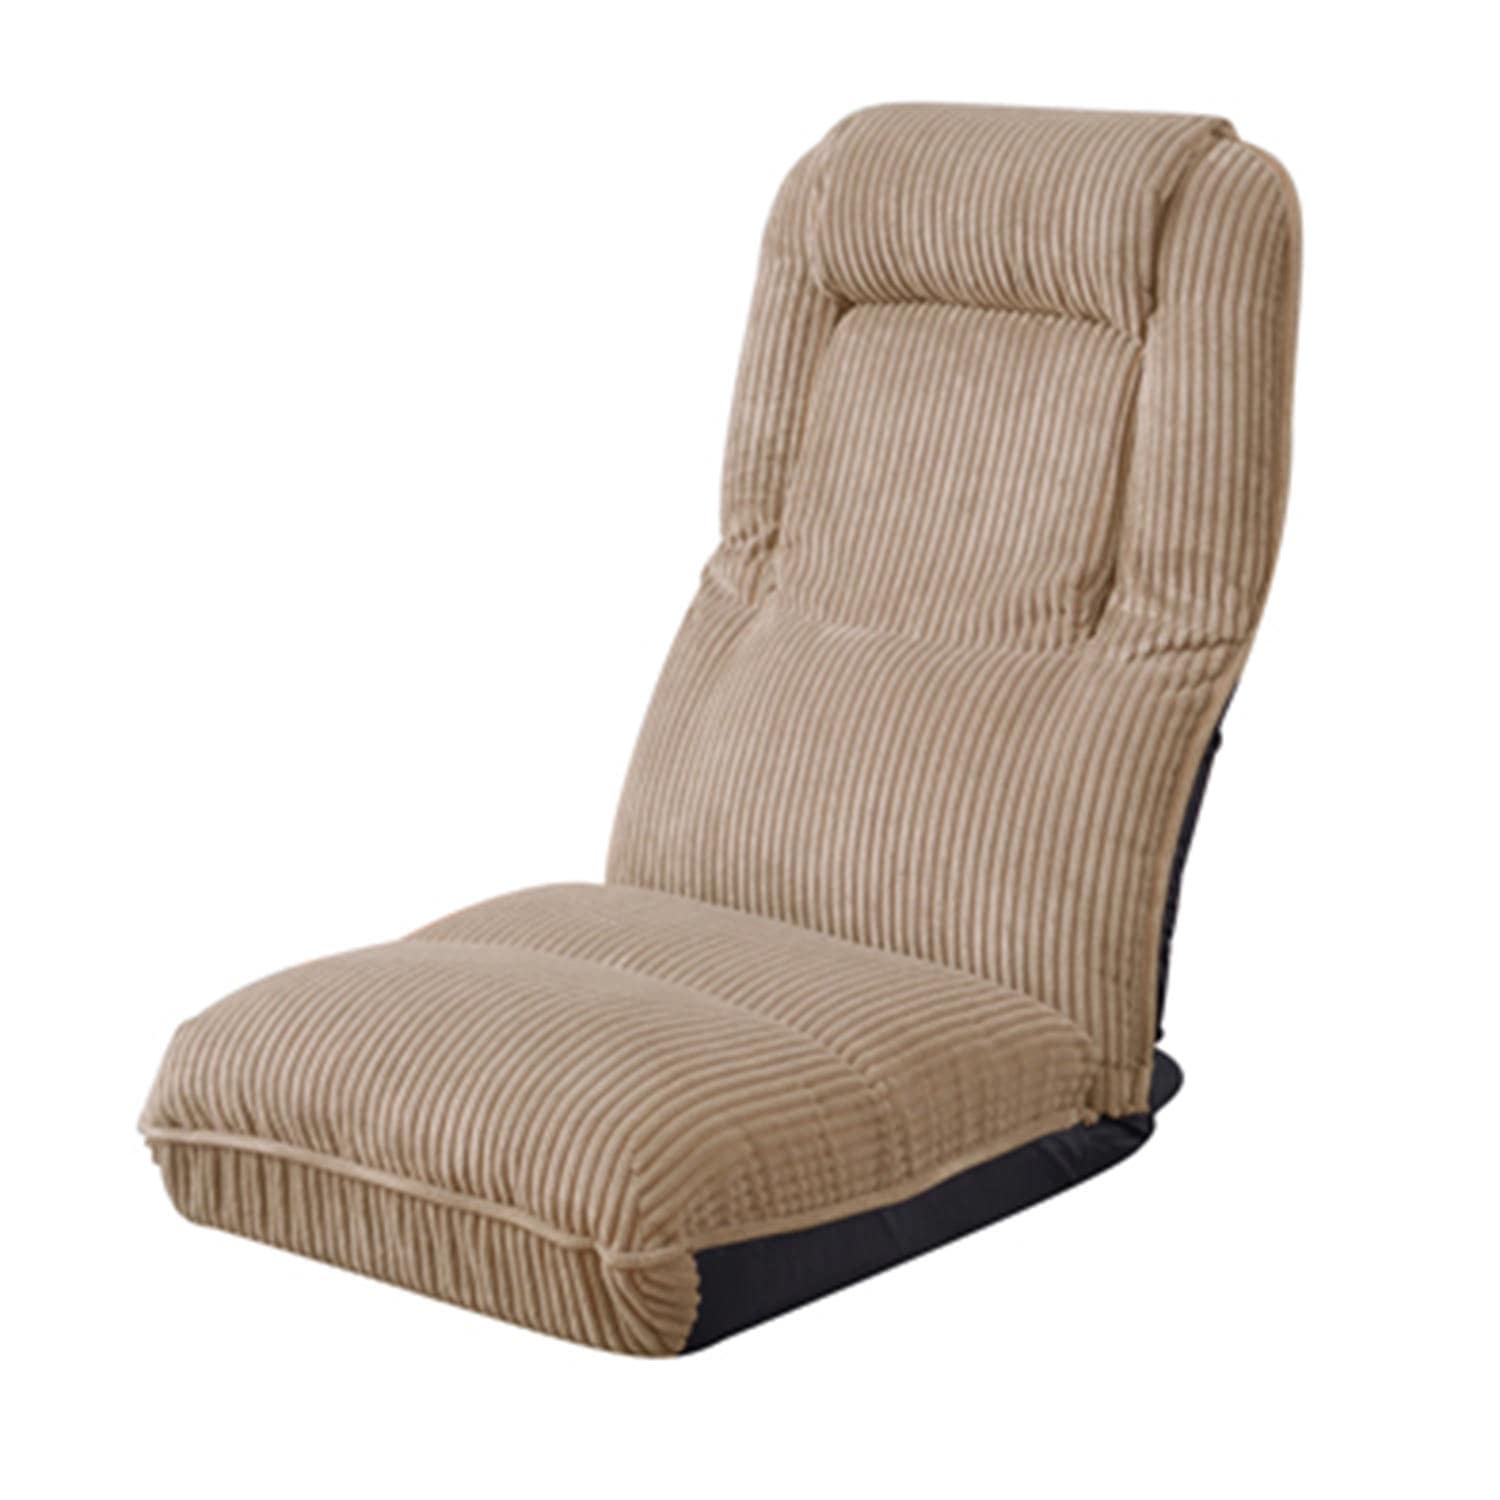 ベルメゾン コーデュロイデザインのリクライニング座椅子 ベージュ